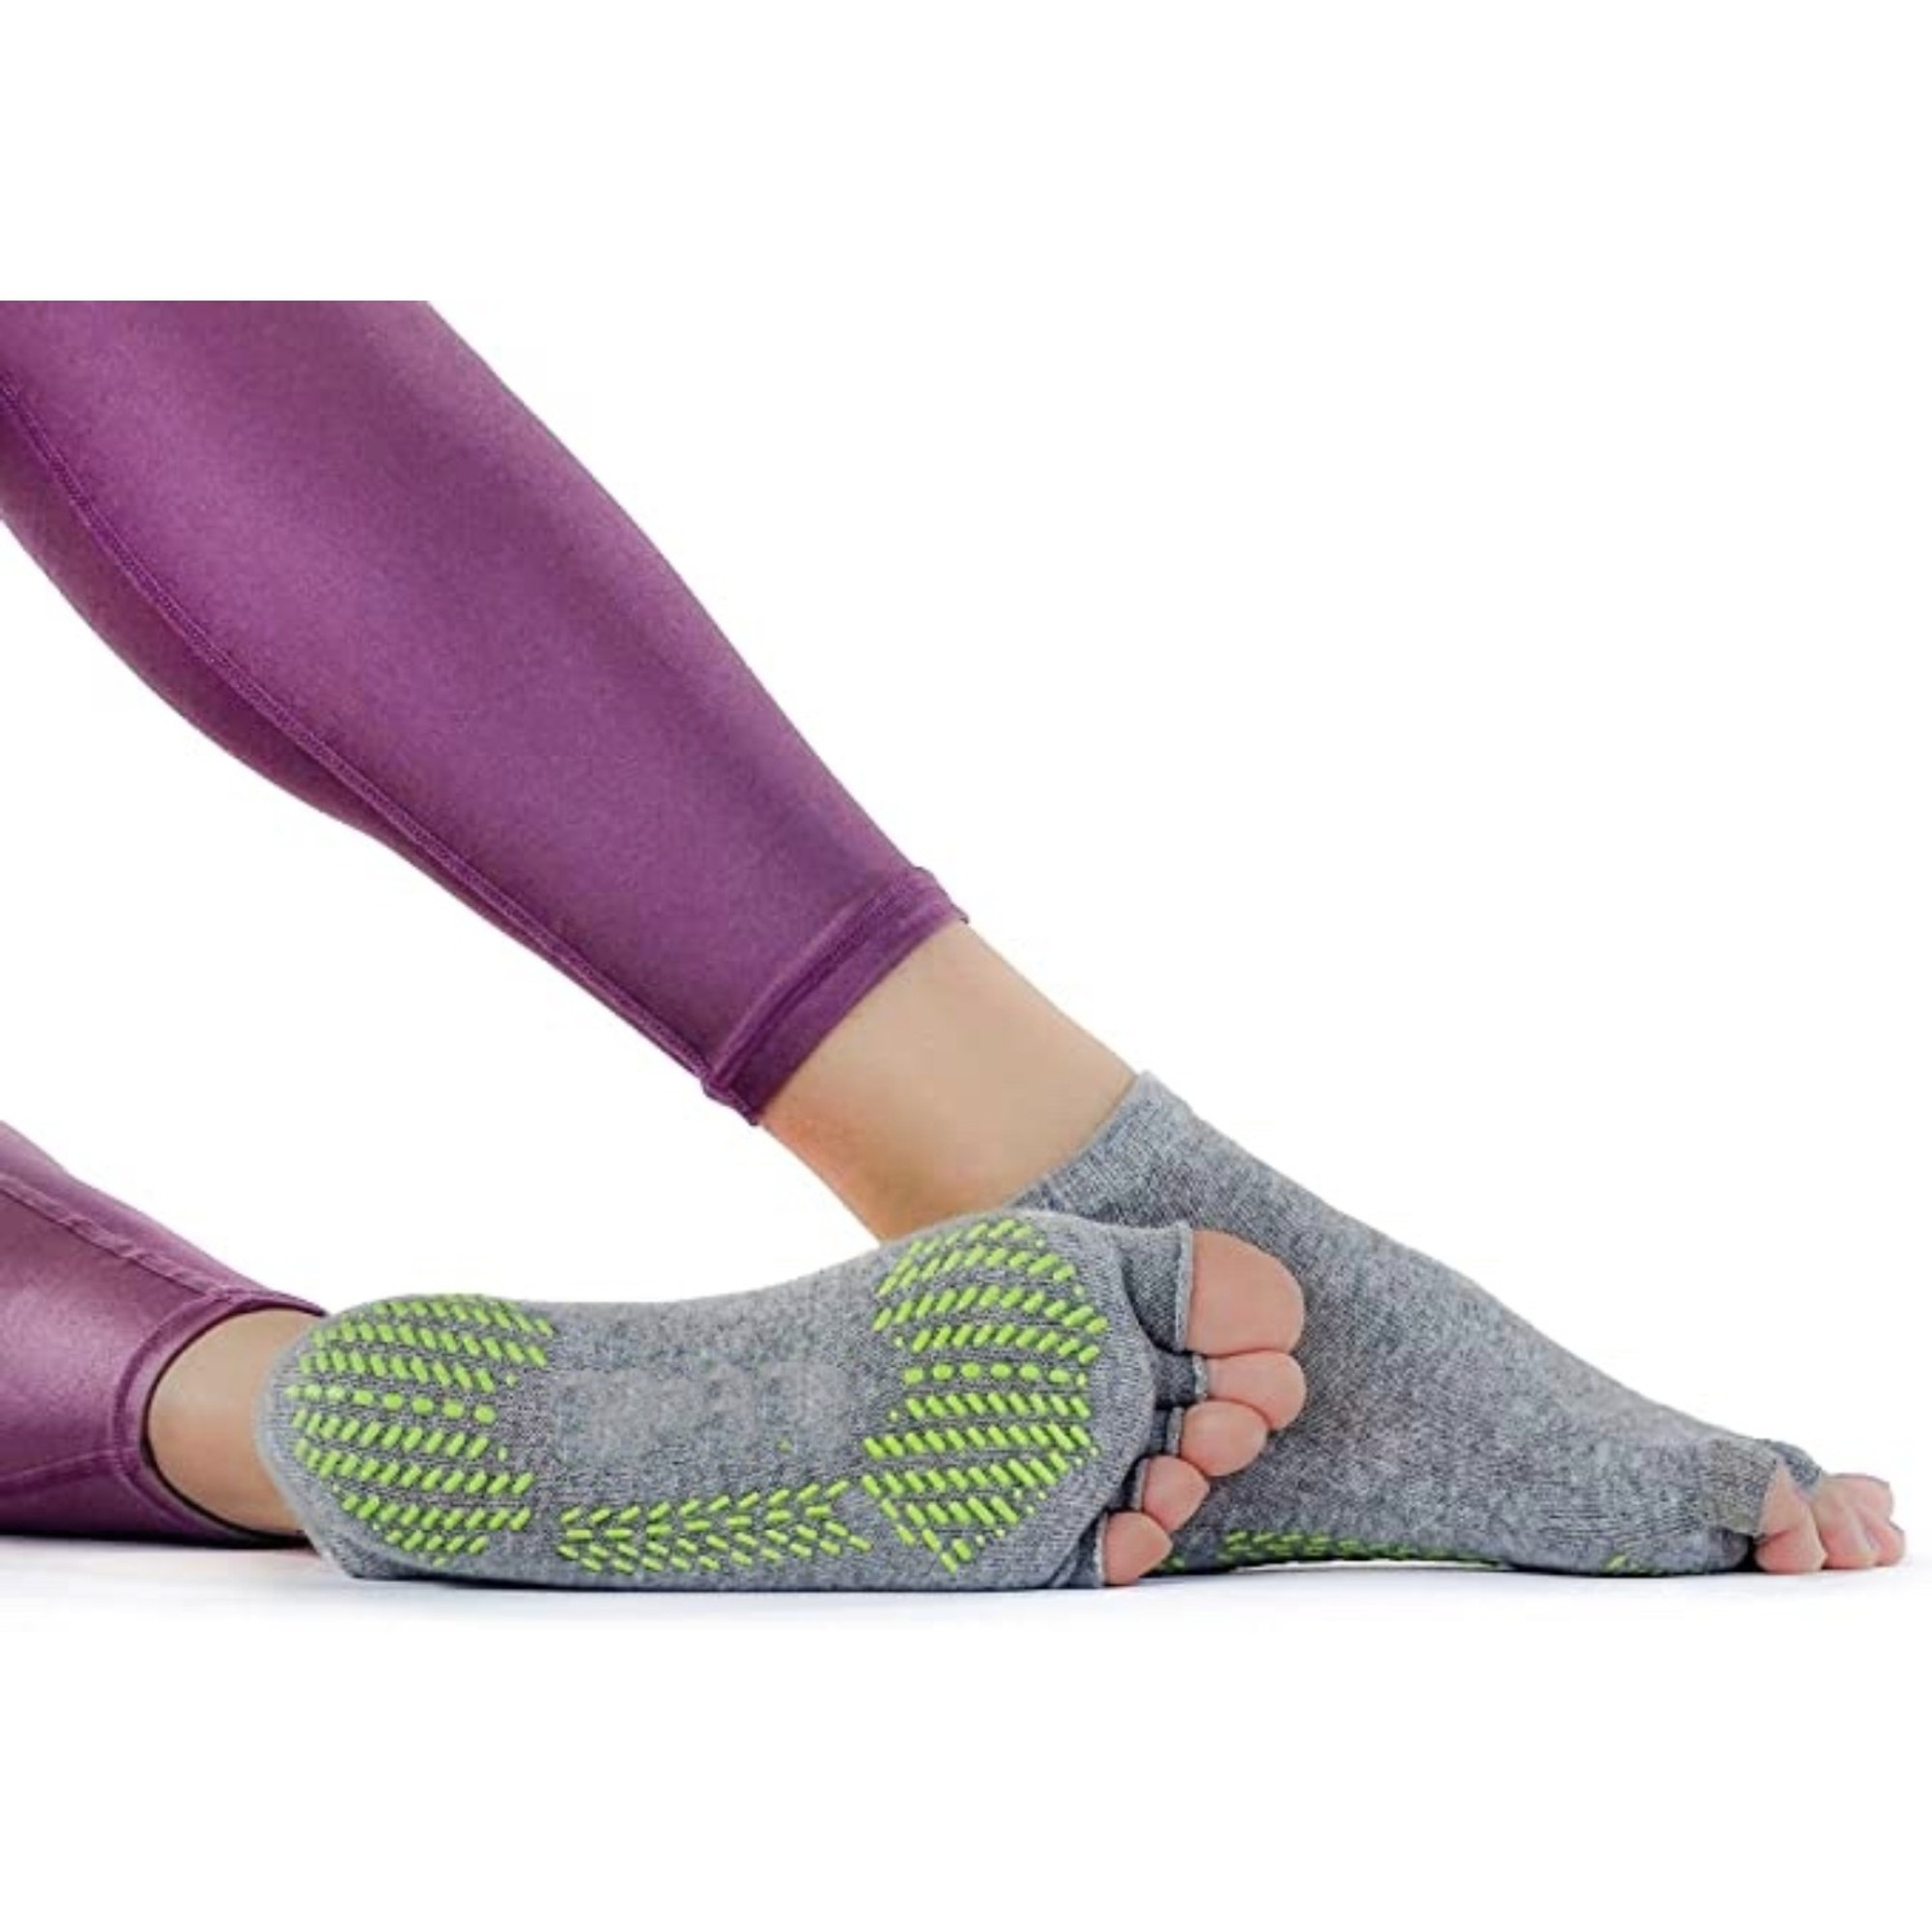 Yoga Pilates Toeless Socks with Grips ,Non Slip Half Toe for Gym